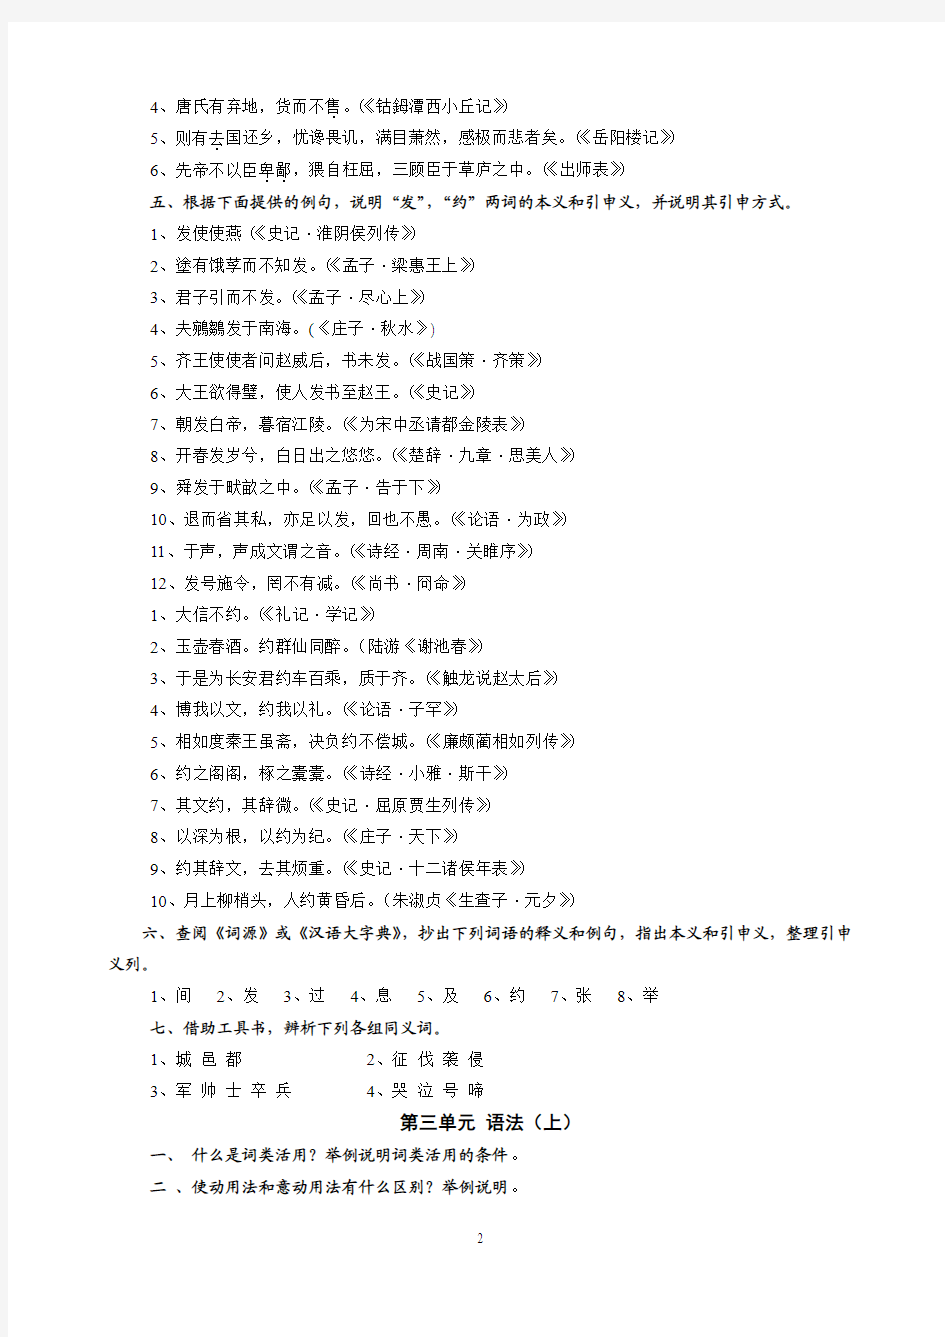 王力古代汉语习题集文字版(xd)